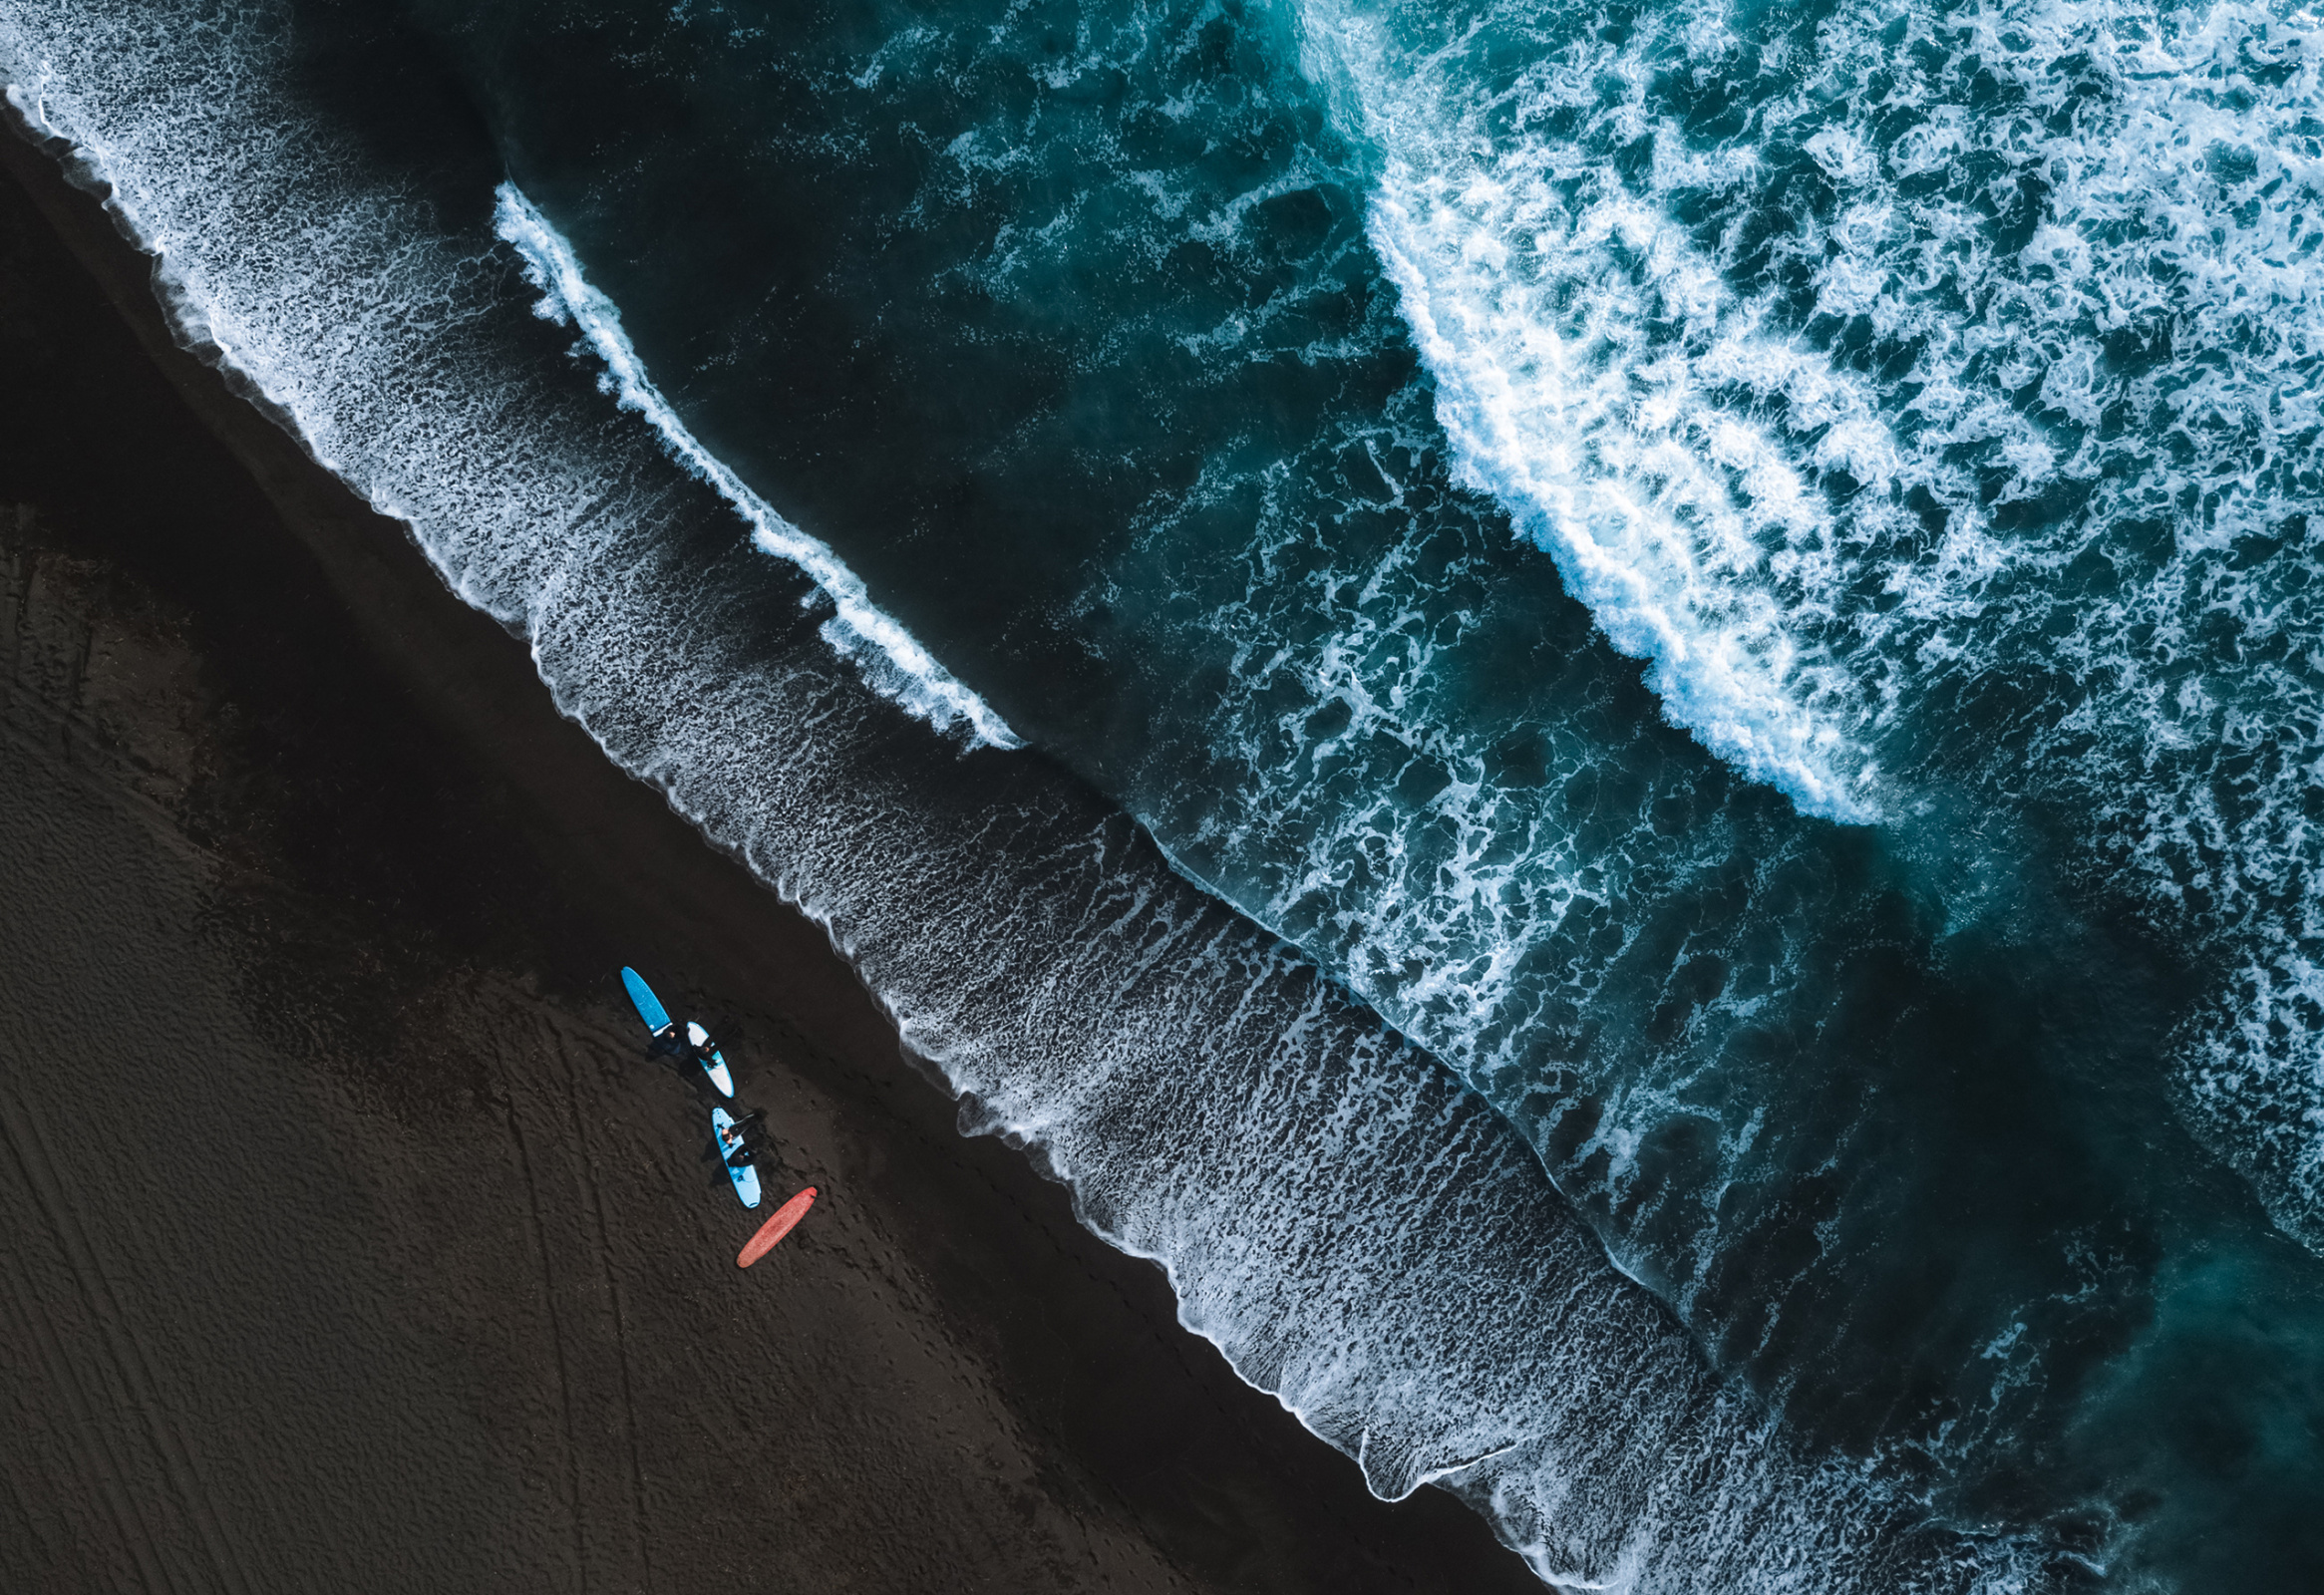 Серфинг на Камчатке — это испытание себя. Фото: Андрей Белавин, участник фотоконкурса РГО 